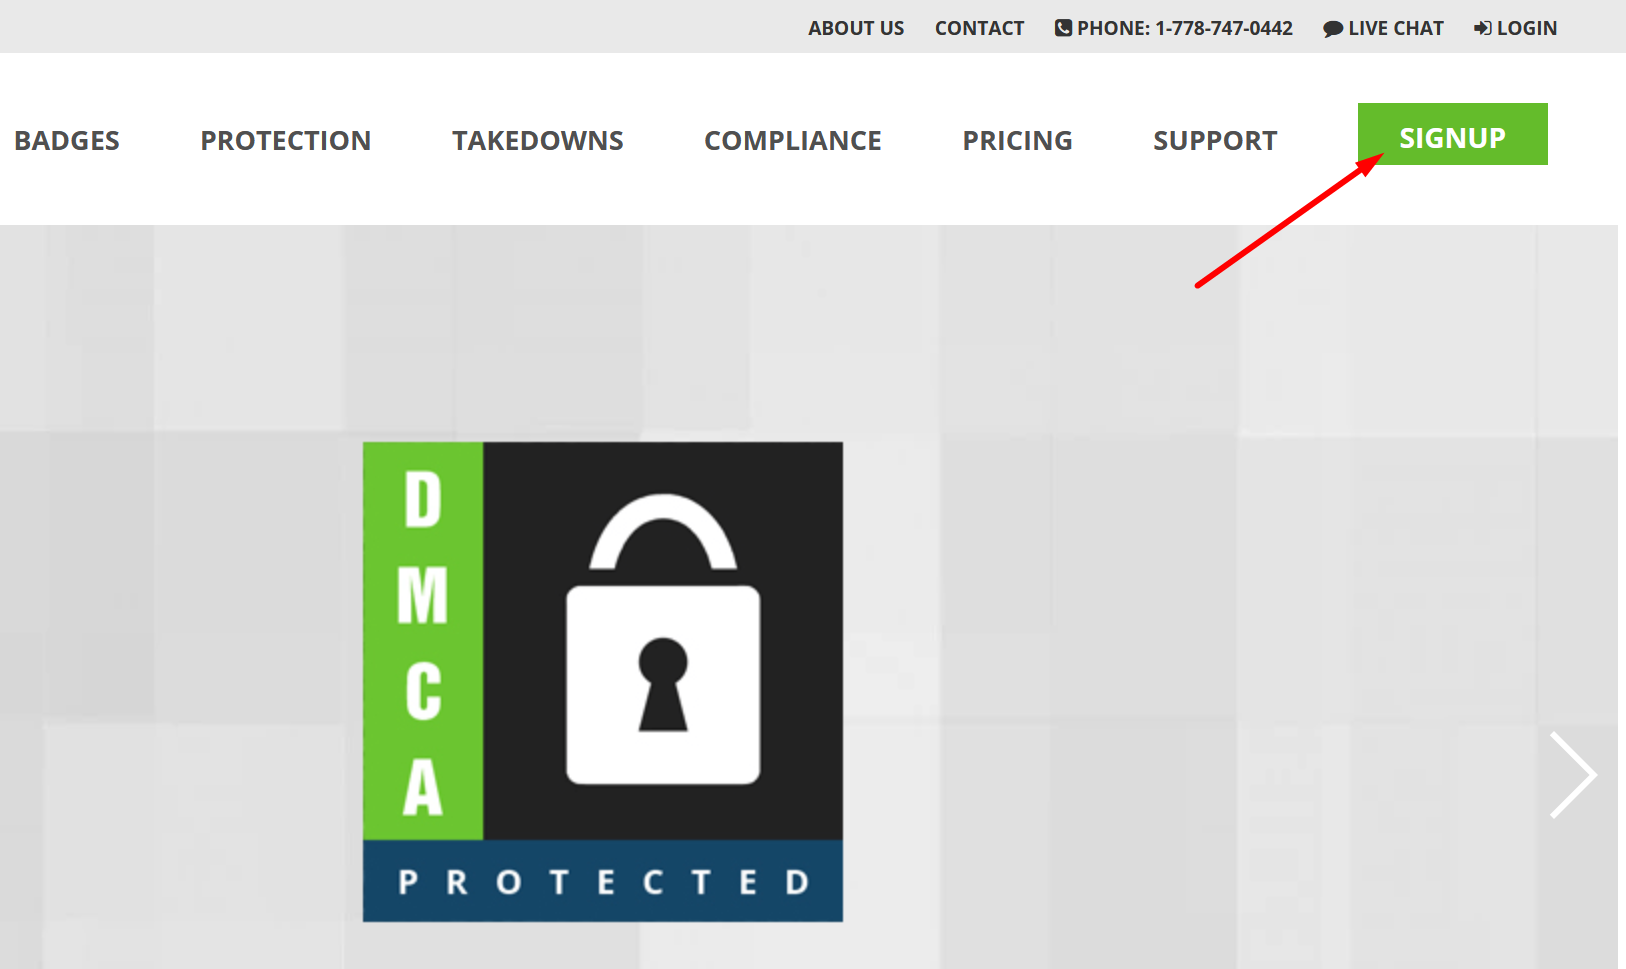 Nhấn vào nút "SIGNUP" trên website của DMCA để đăng ký